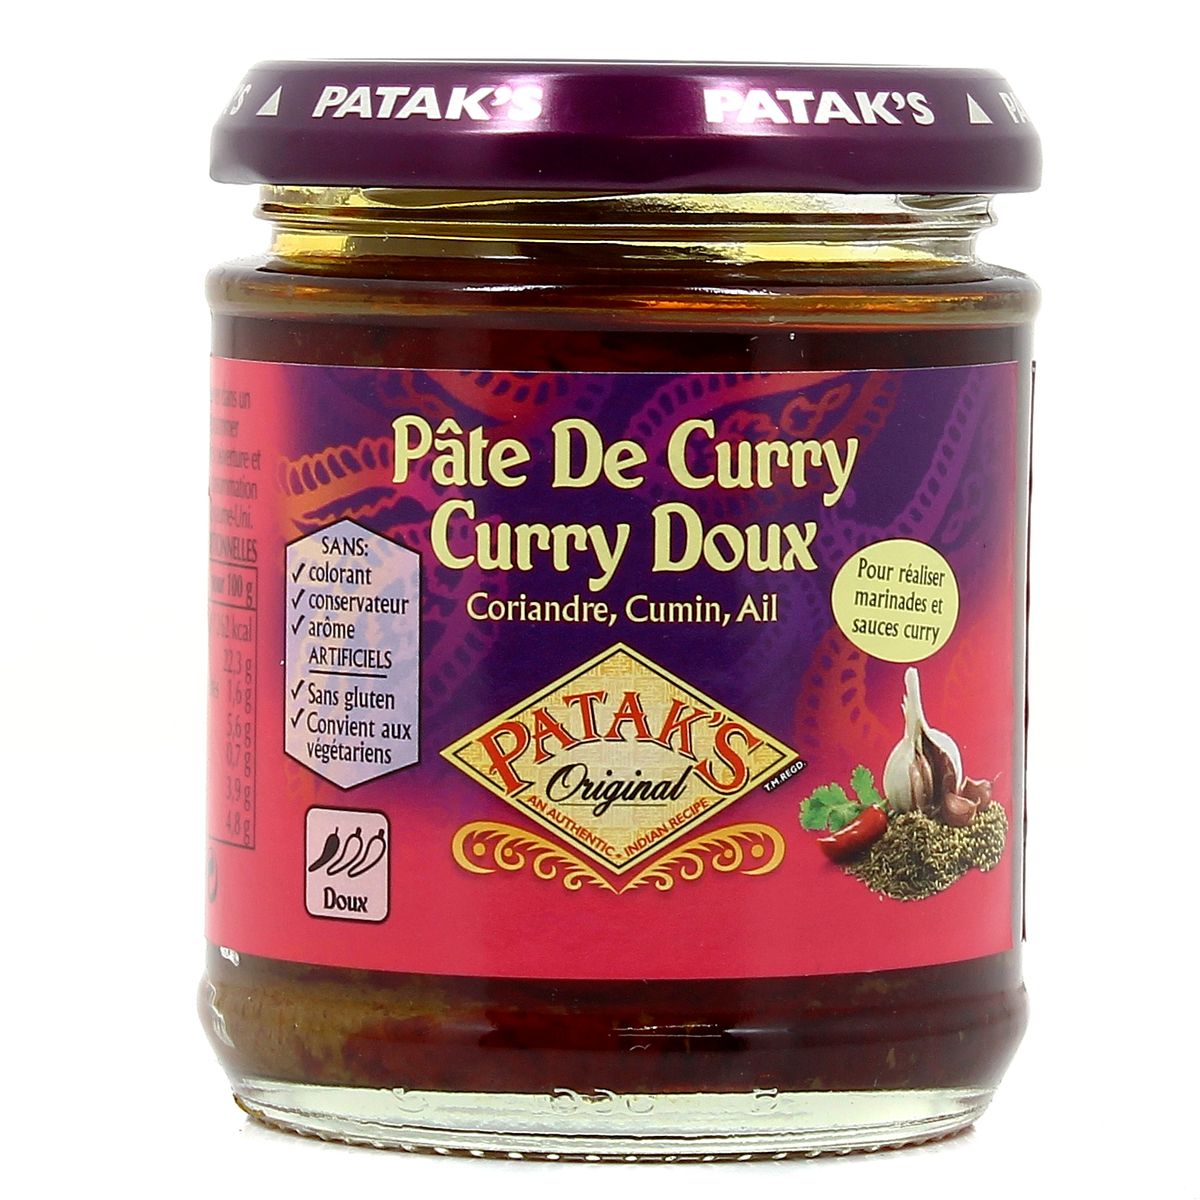 Pate de curry